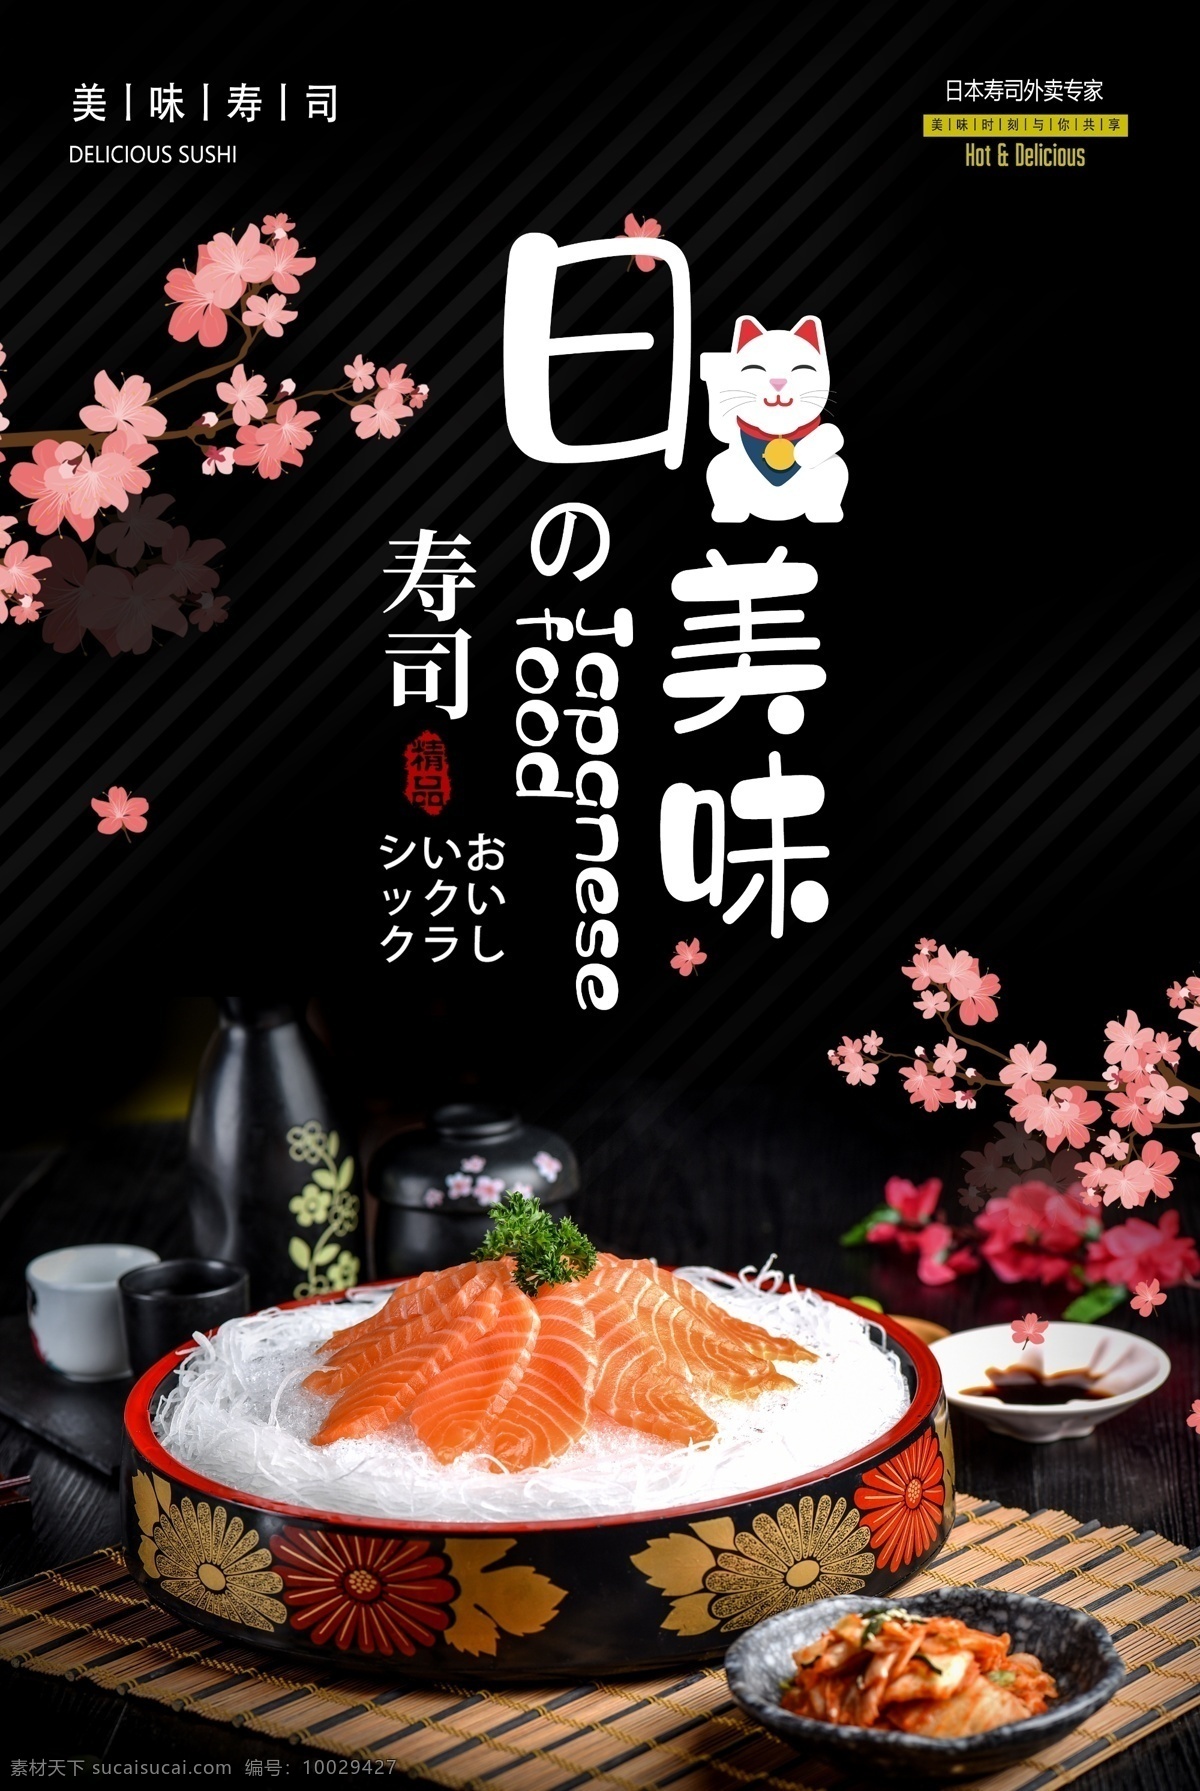 日式 美味 寿司 刺身 美食 食 材 海报 日式美味 食材